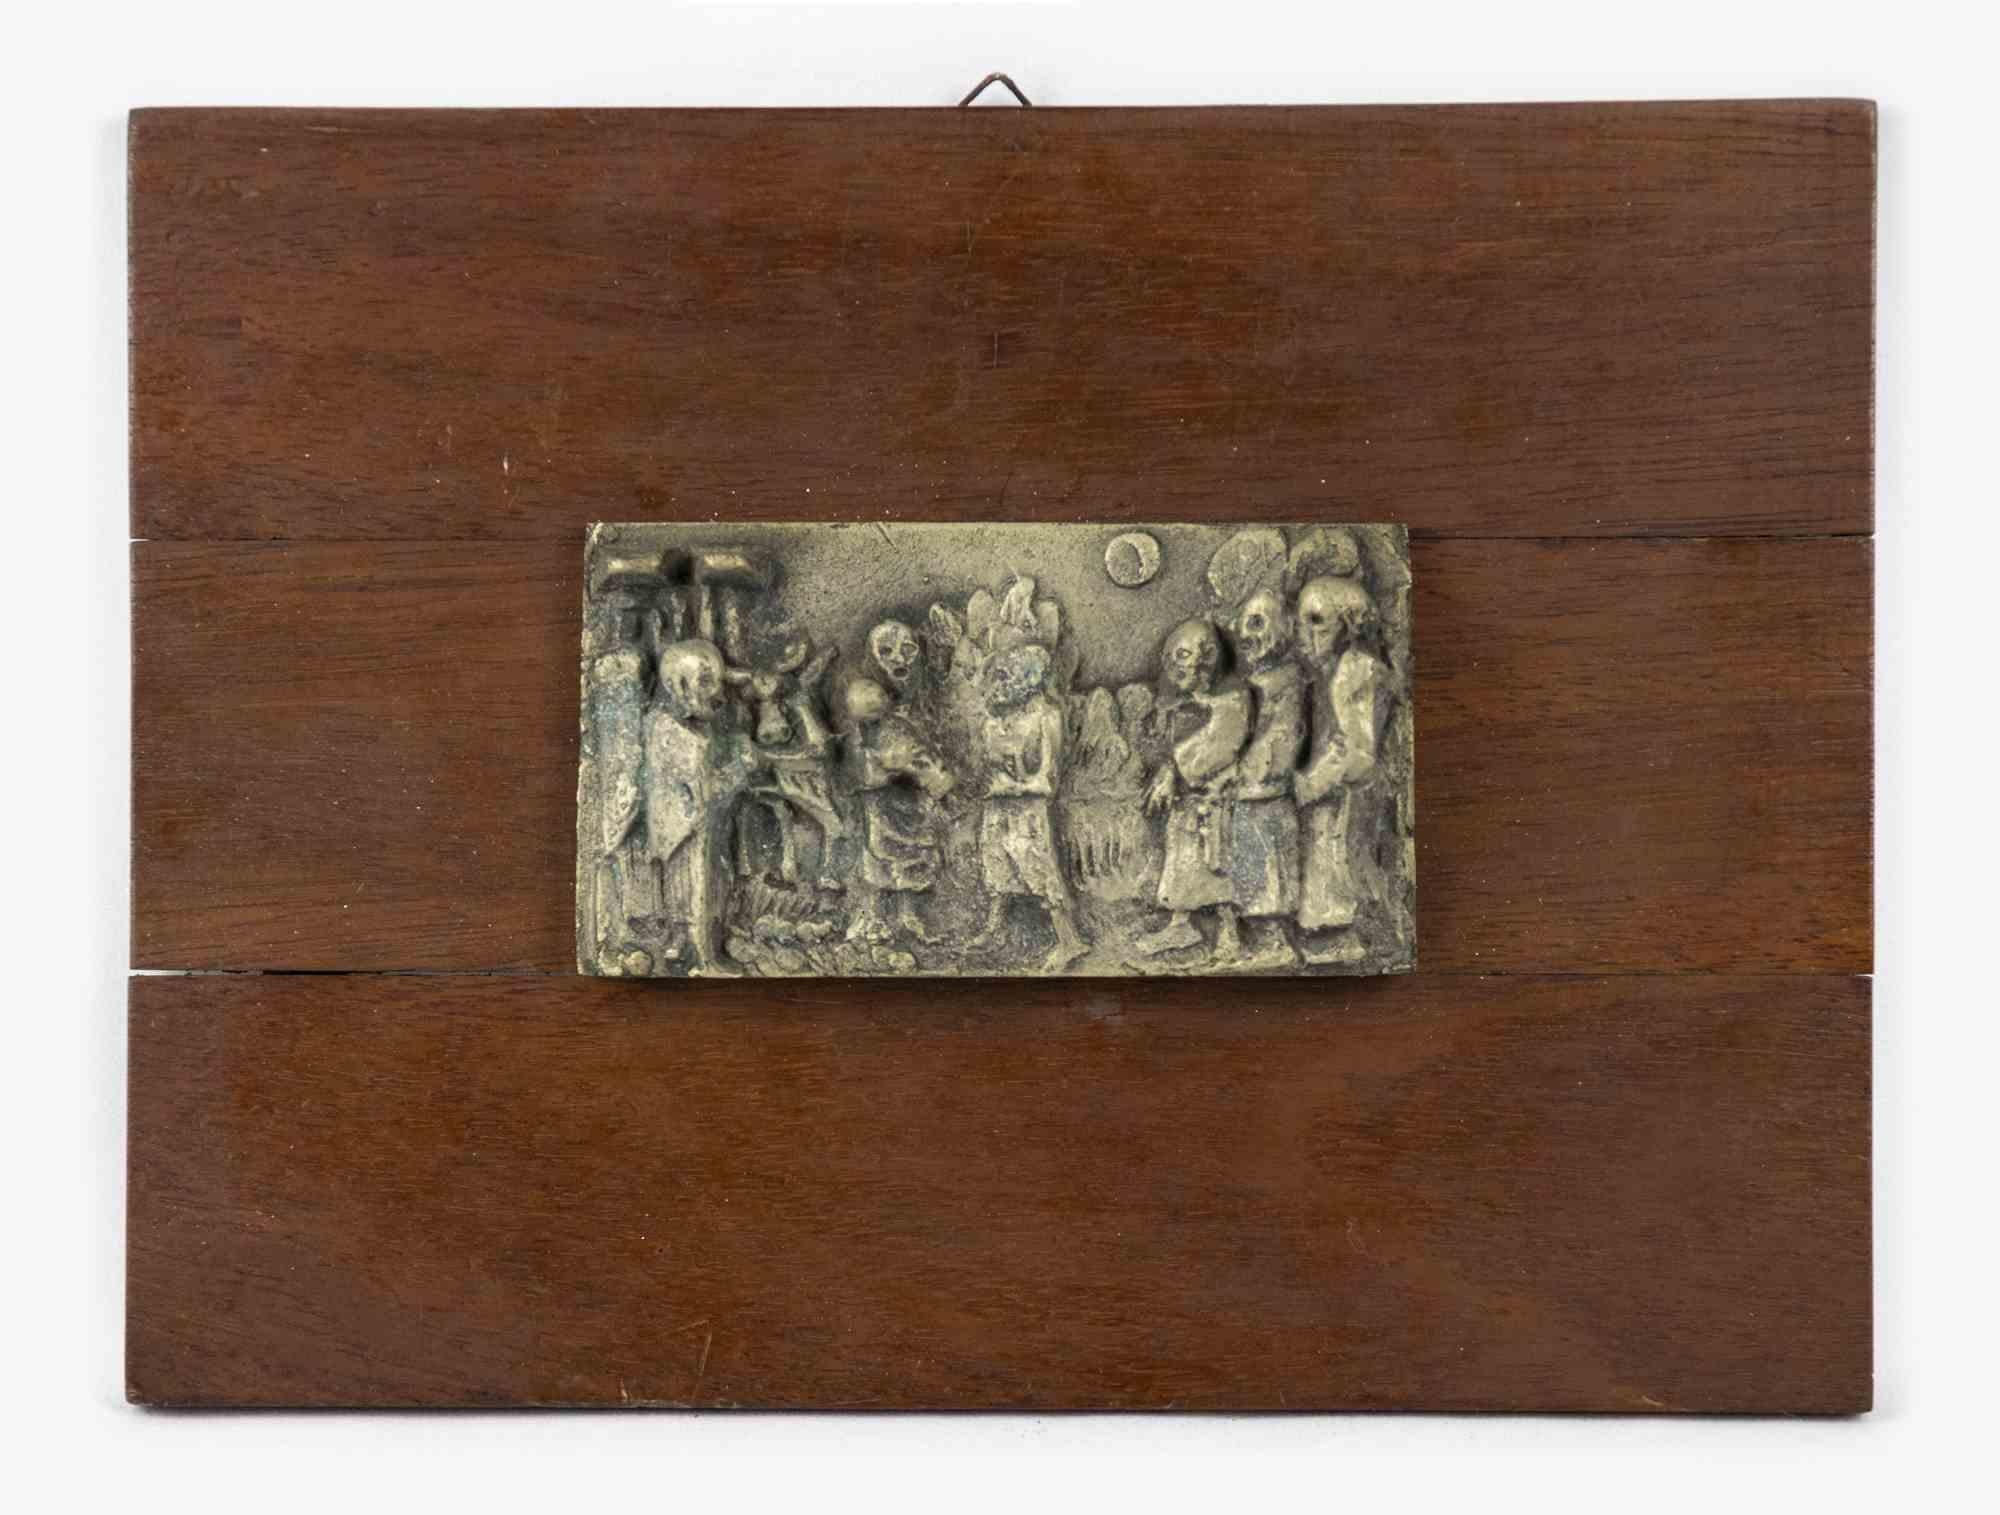 La base en bois avec relief en laiton est un objet décoratif original réalisé au début du XXe siècle.

Fabriquées en Italie.

La base a été réalisée entièrement en bois et, sur le sommet, un haut-relief en laiton représentant une procession a